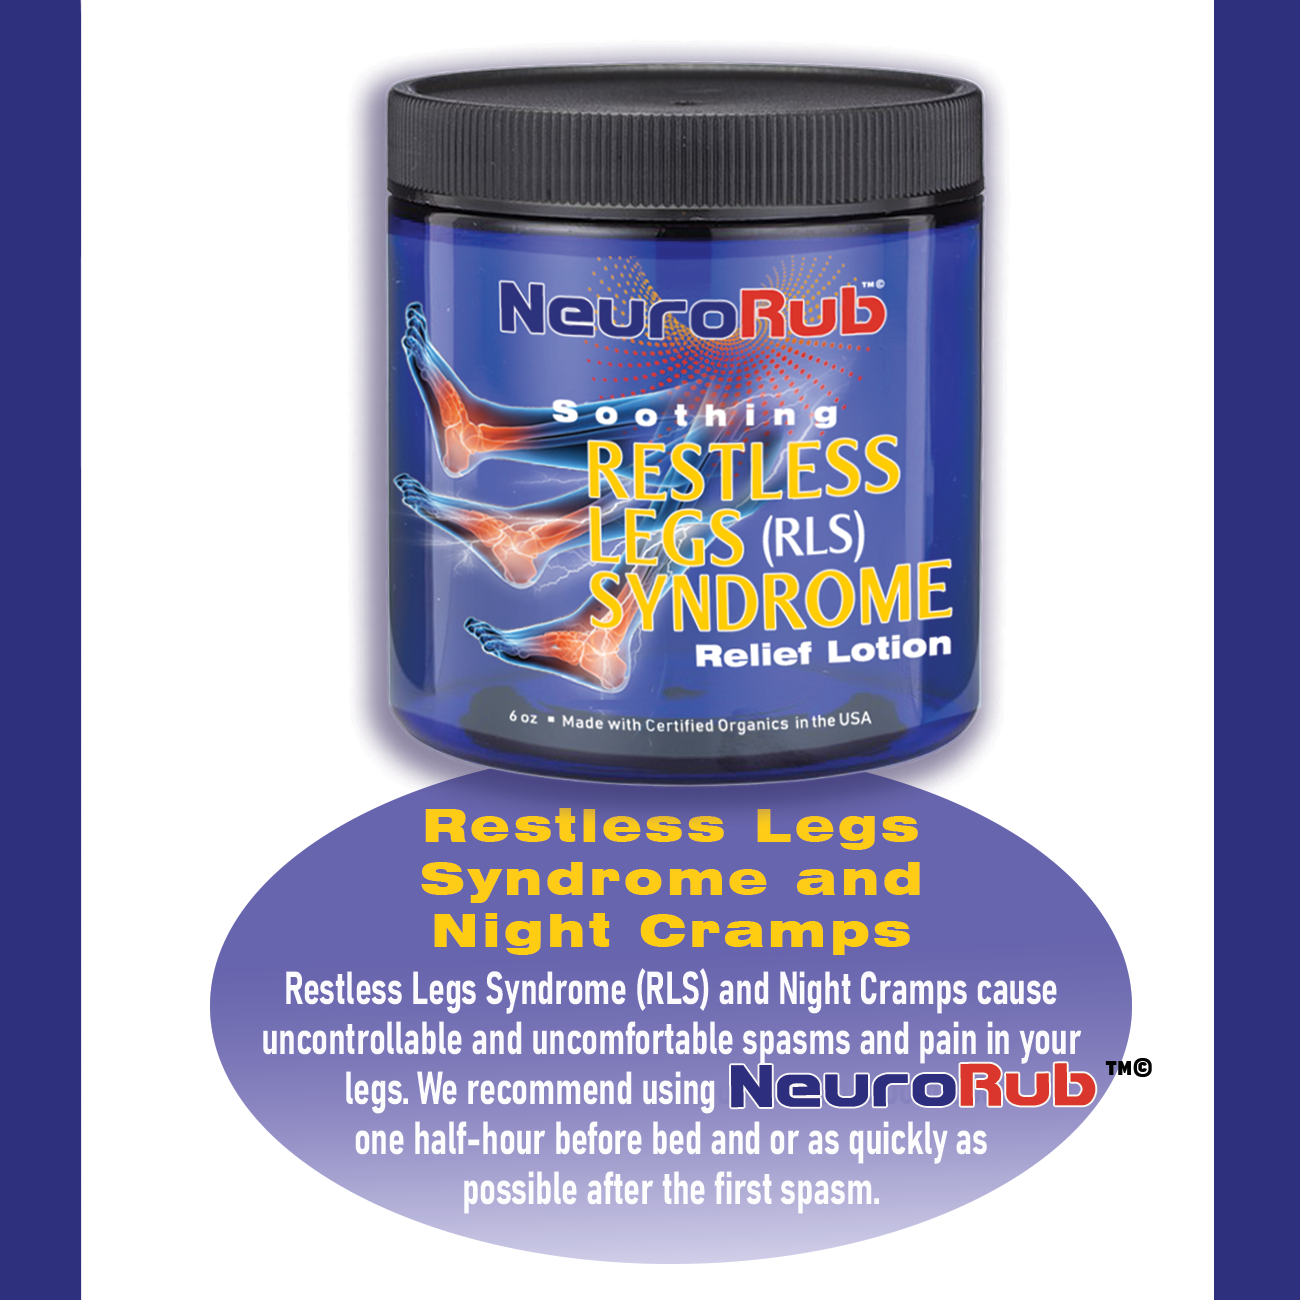 Restless Legs Syndrome  further Lotion - NeuroRub